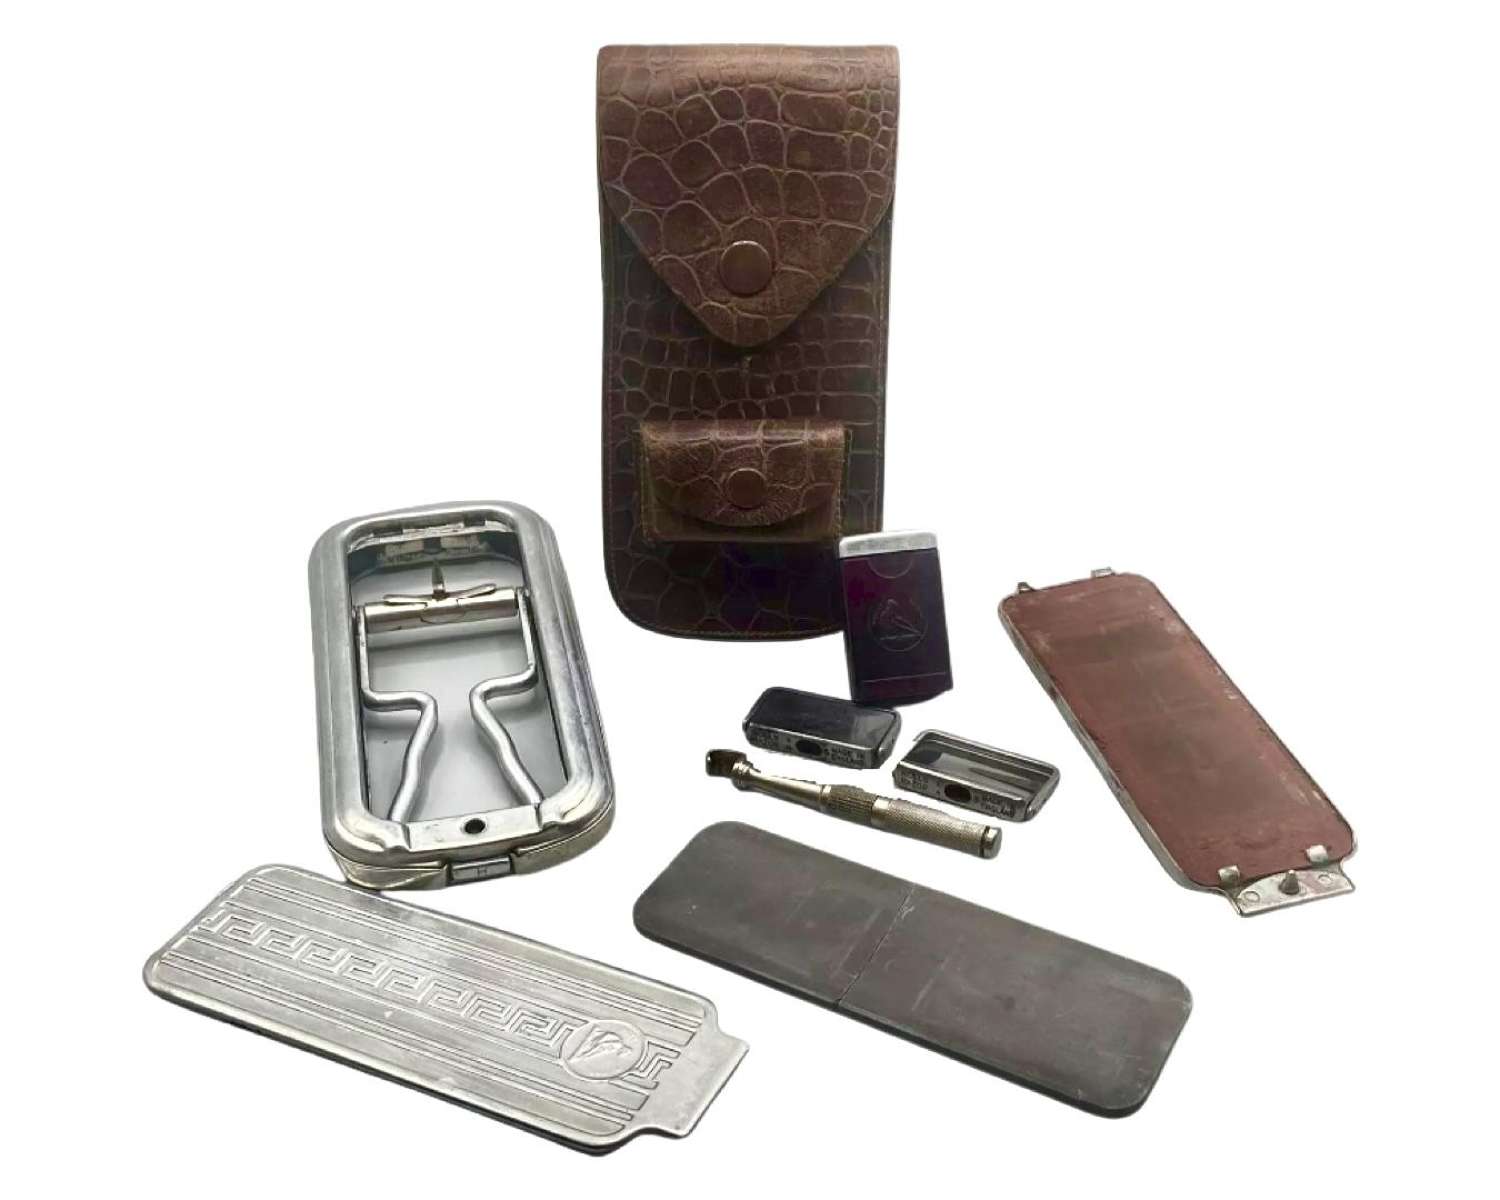 WW2 British Royal Air Force Officers Gentleman’s Vanity & Hygiene Kit